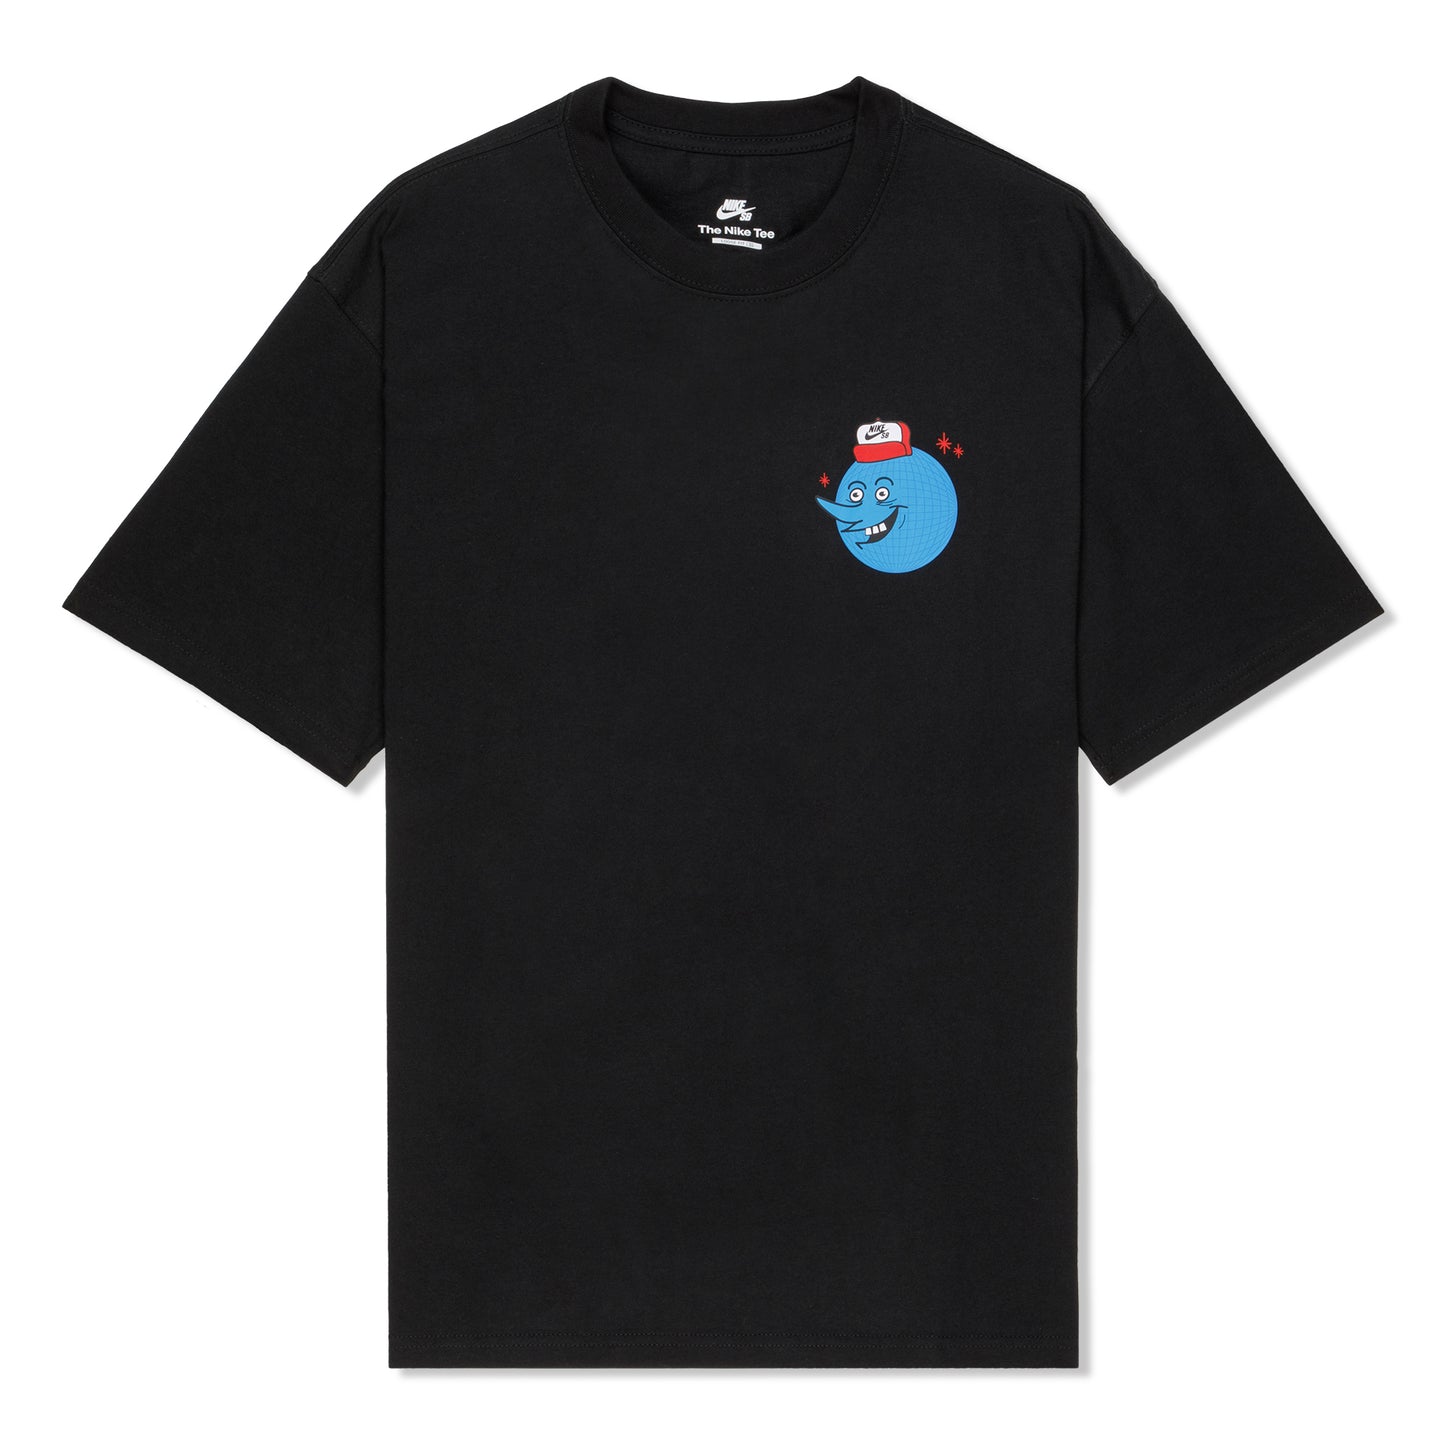 Nike SB Globe Guy Skate T-Shirt (Black)